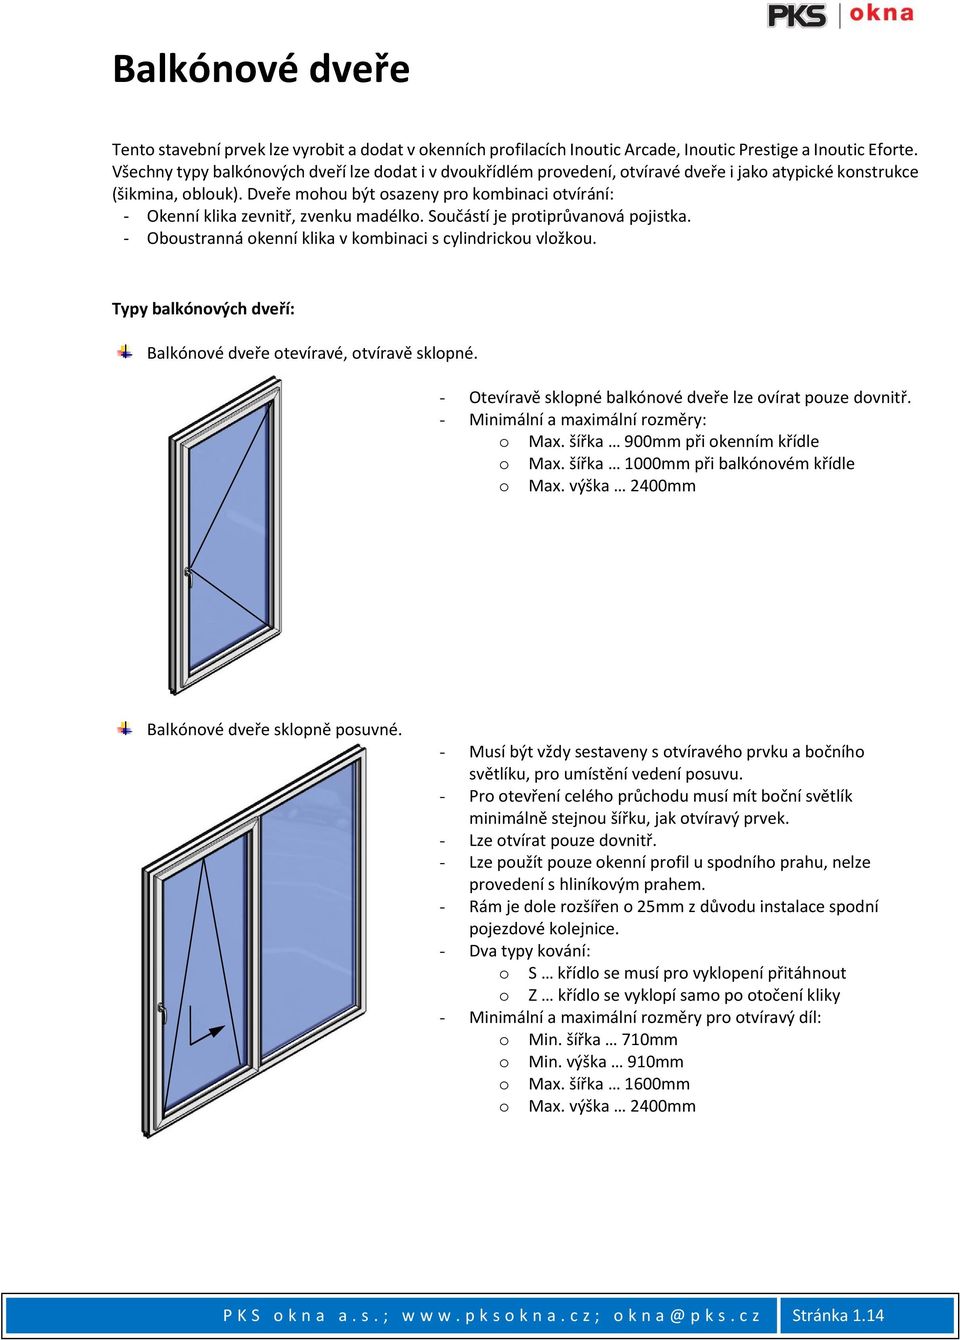 Dveře mohou být osazeny pro kombinaci otvírání: - Okenní klika zevnitř, zvenku madélko. Součástí je protiprůvanová pojistka. - Oboustranná okenní klika v kombinaci s cylindrickou vložkou.